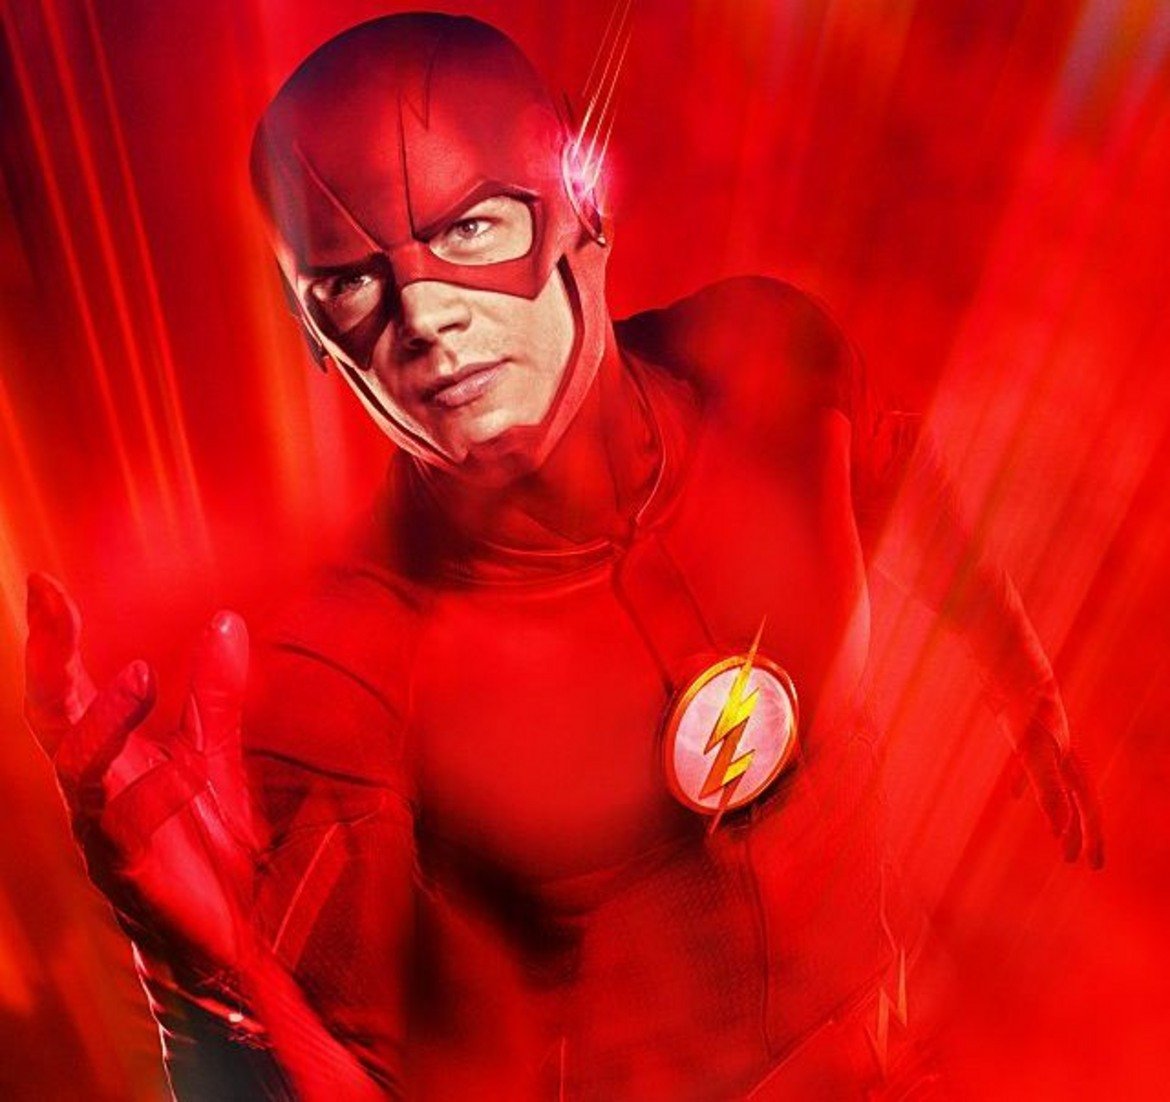 2. The Flash
(място през 2017-а: 3)